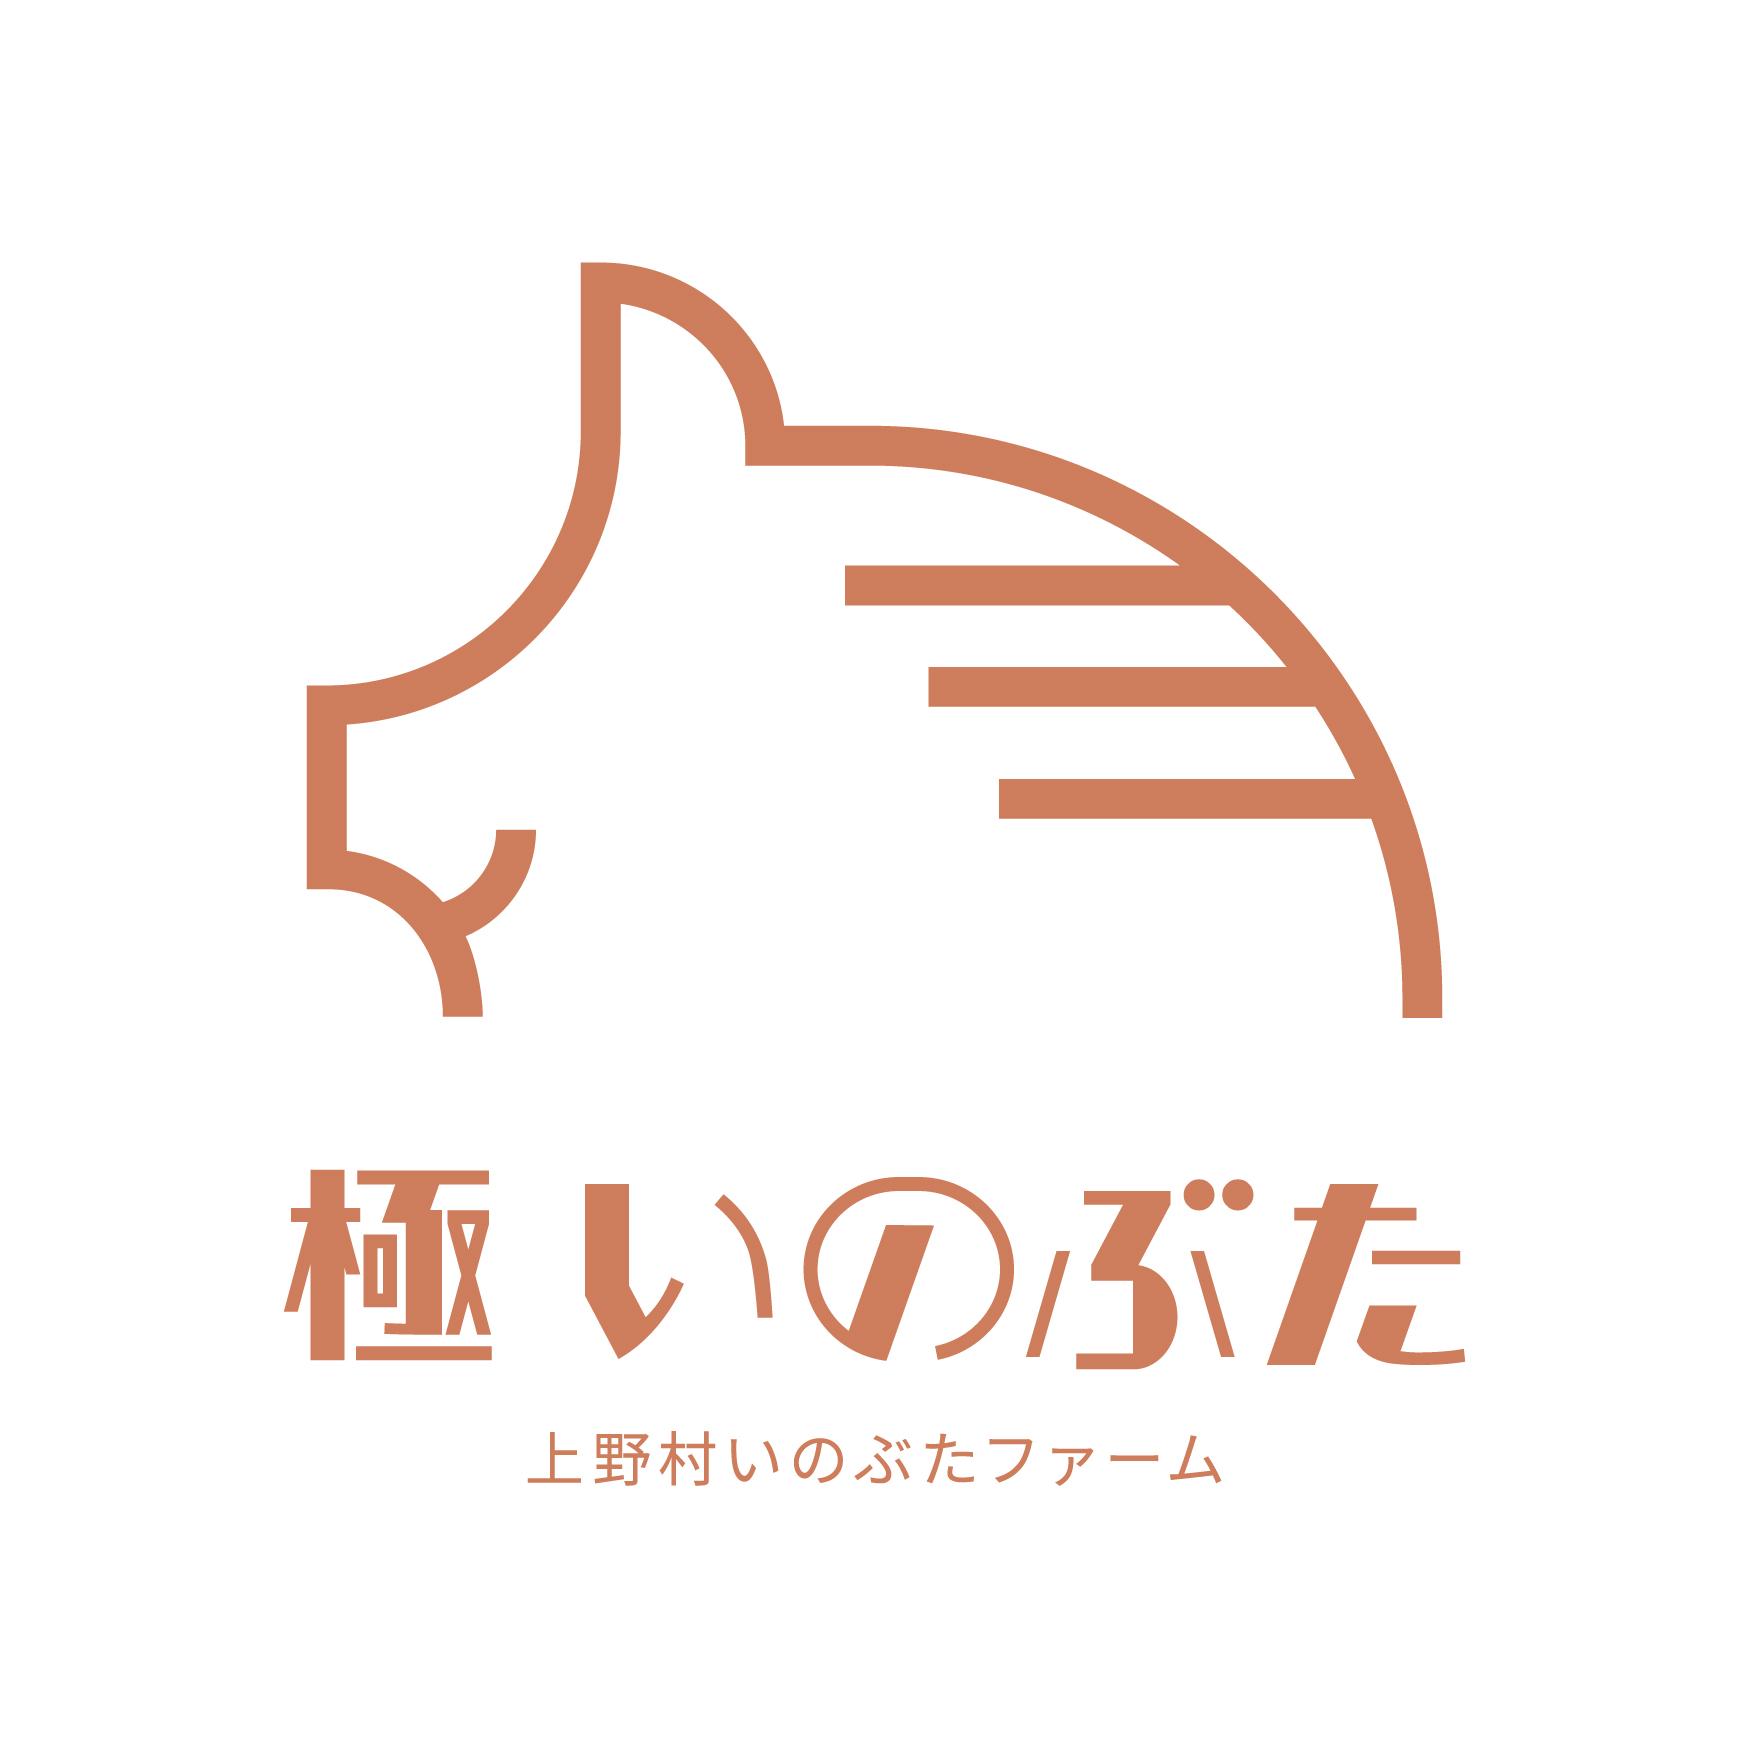 極いのぶた_logo_縦_JPN.jpg